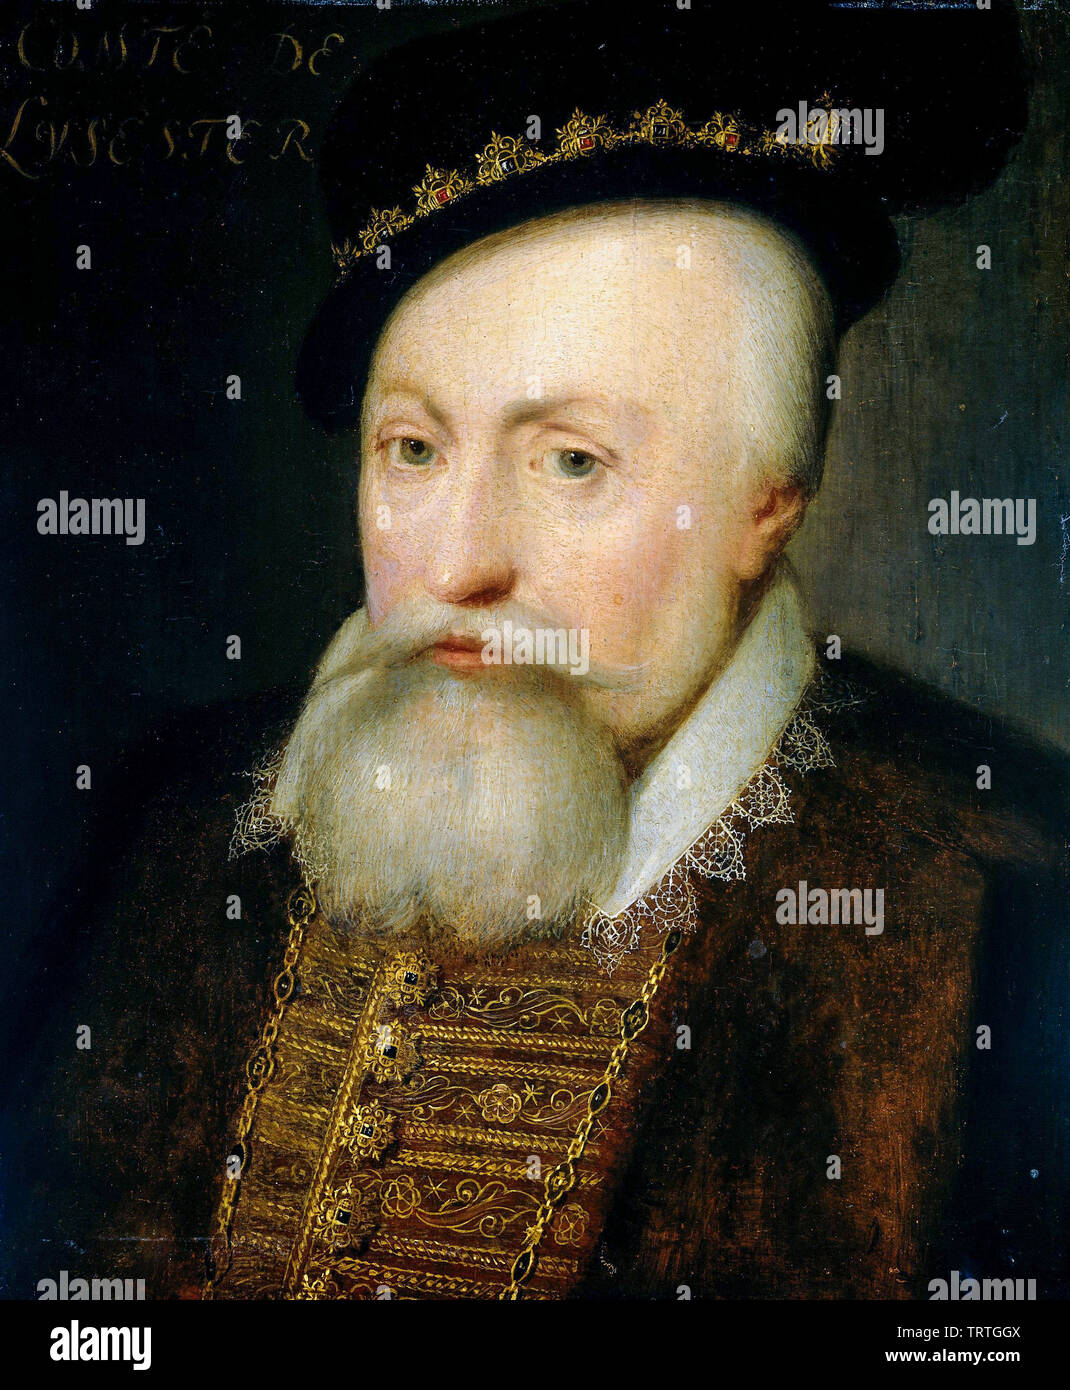 Robert Dudley, Earl of Leicester, 1532-1588, portrait painting by Jan van Ravesteyn, 1609 Stock Photo